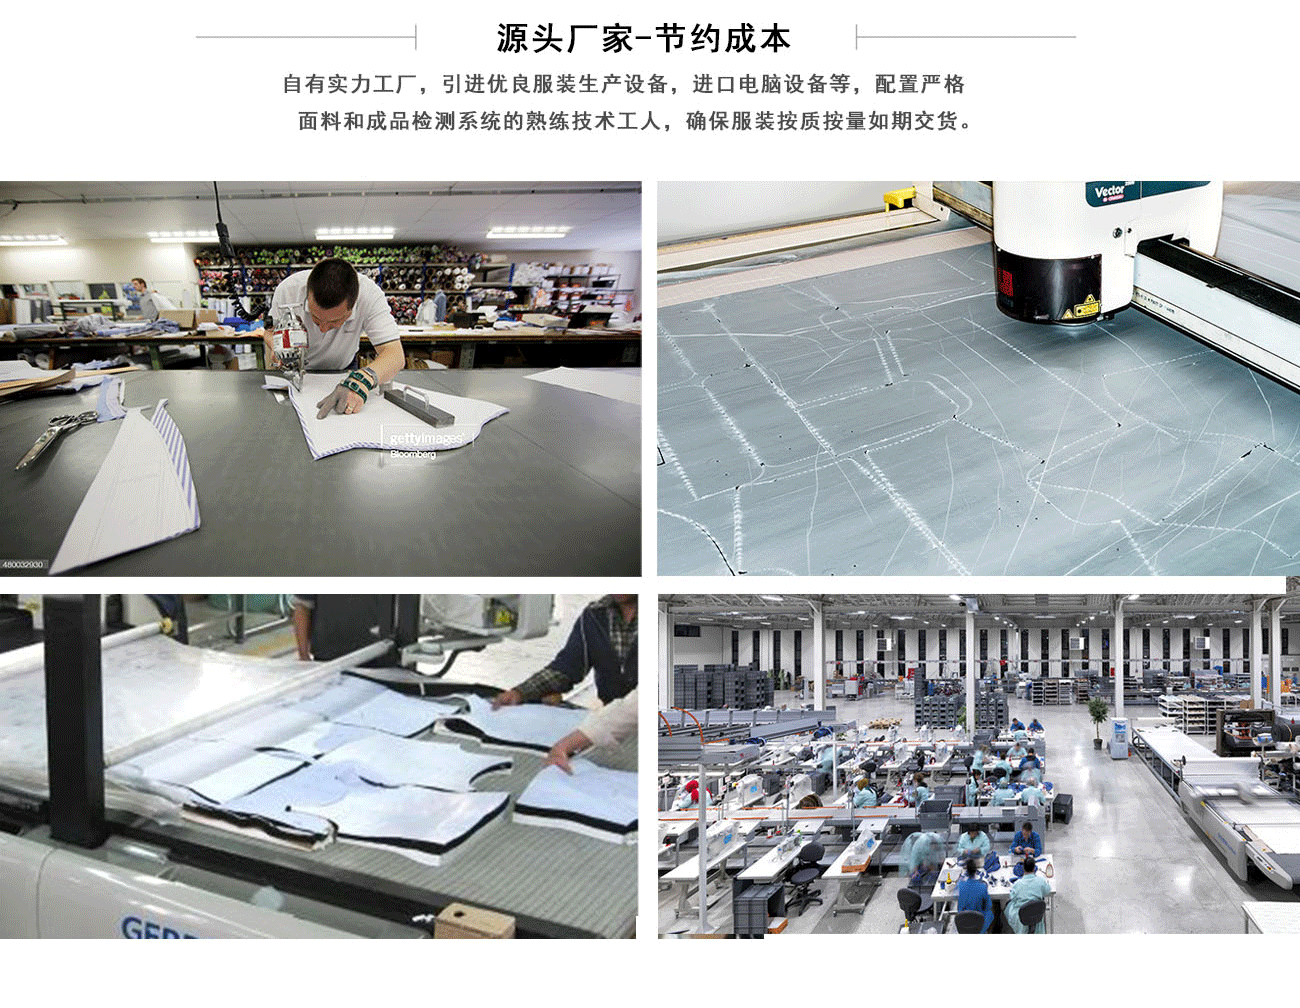 五洲之星女士套装小西服工厂拥有15000平米生产加工基地